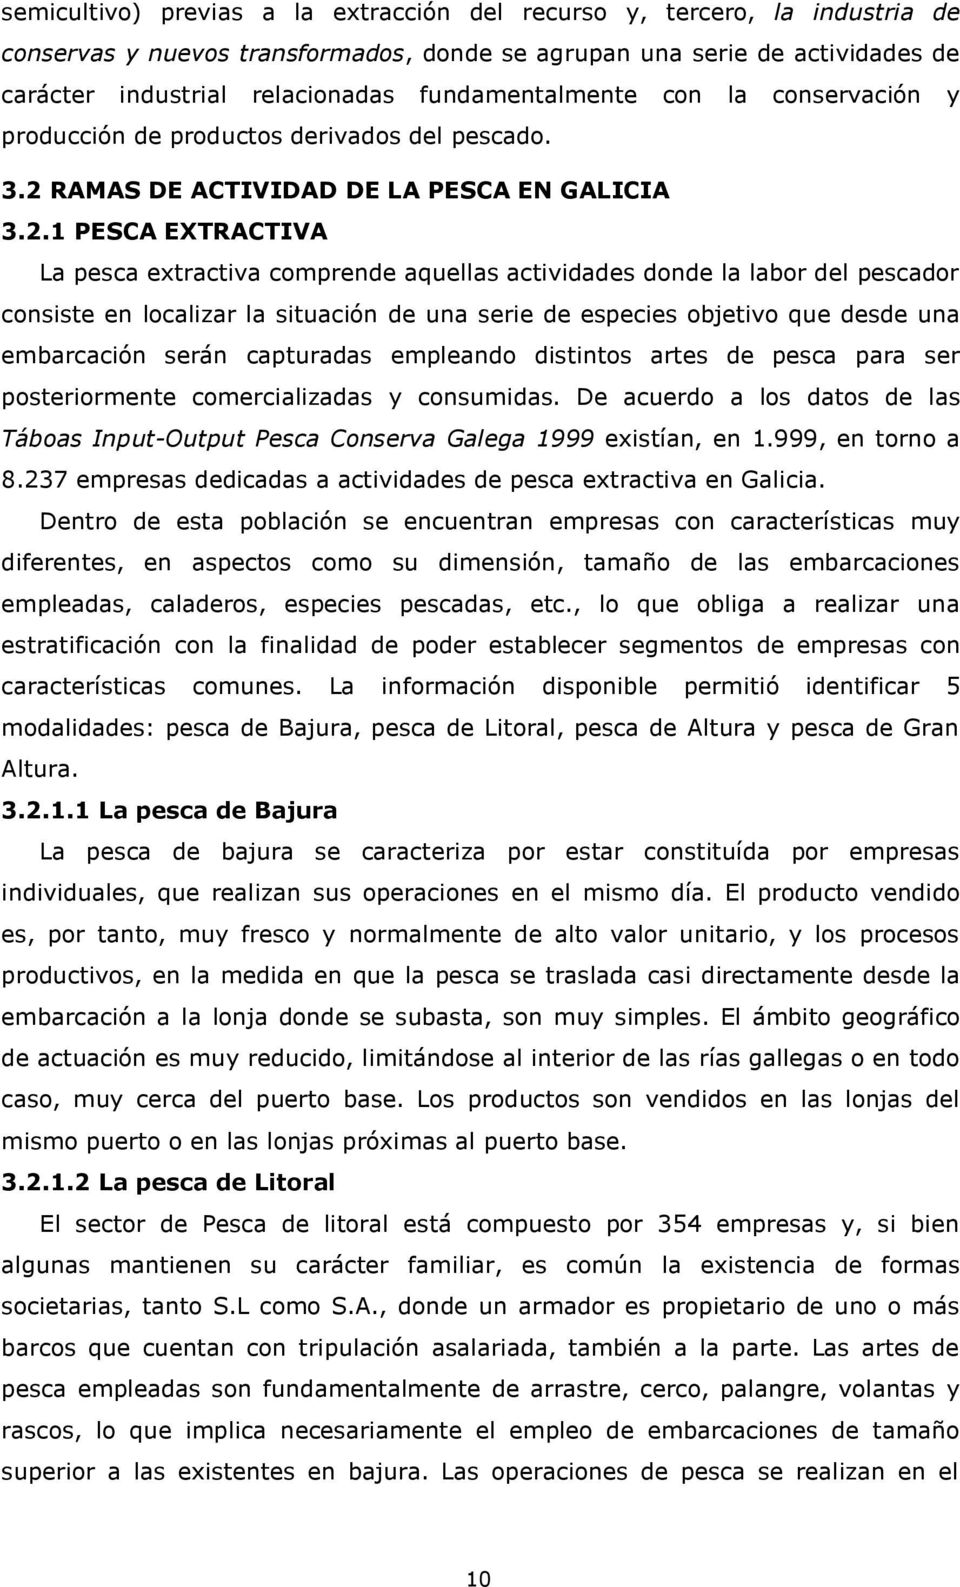 RAMAS DE ACTIVIDAD DE LA PESCA EN GALICIA 3.2.